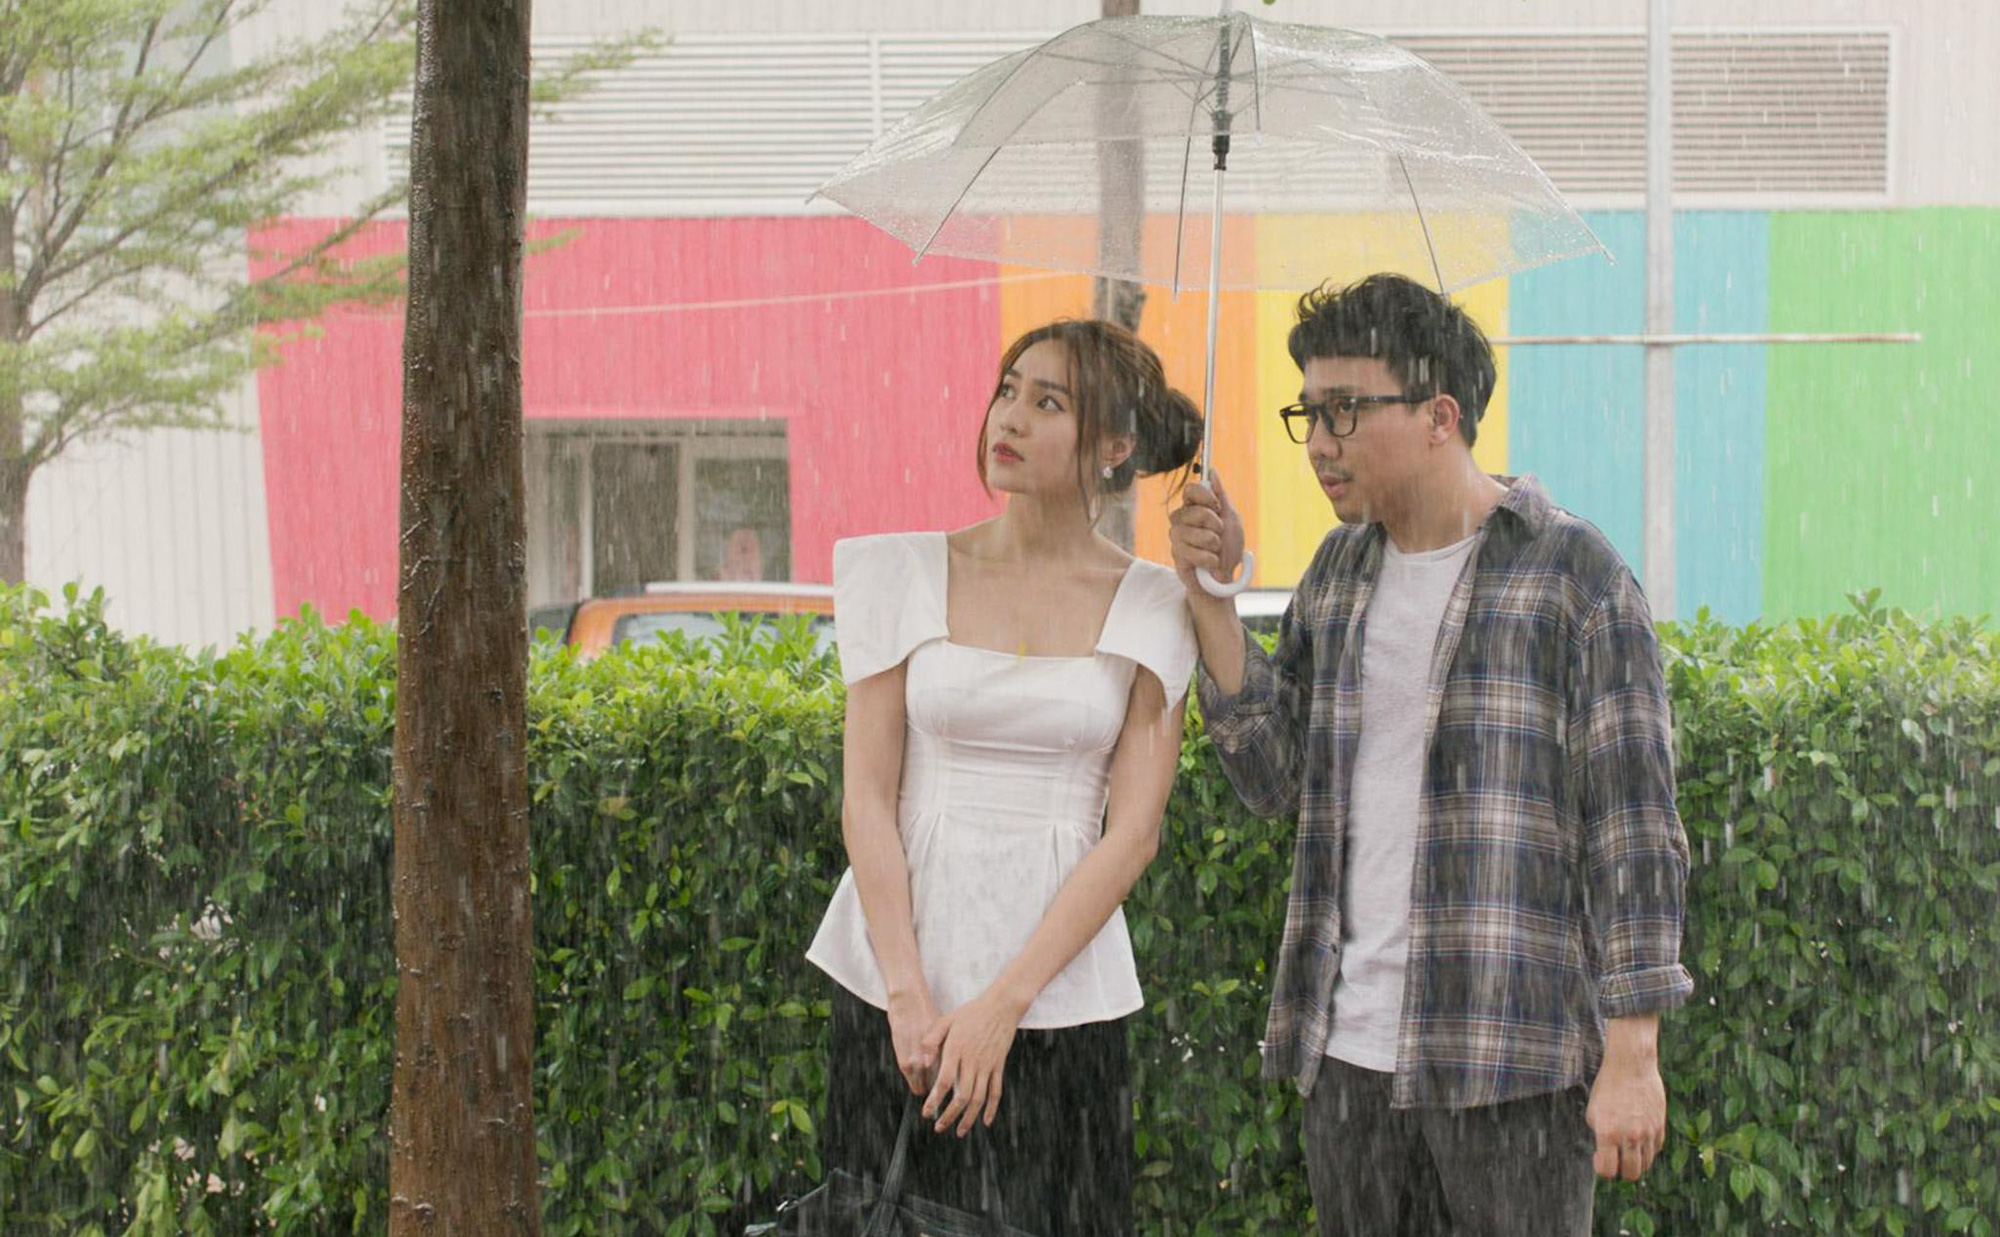 Top phim tình cảm Việt Nam làm sống lại những giây phút ngọt ngào thăng hoa trong tình yêu - Ảnh 7.